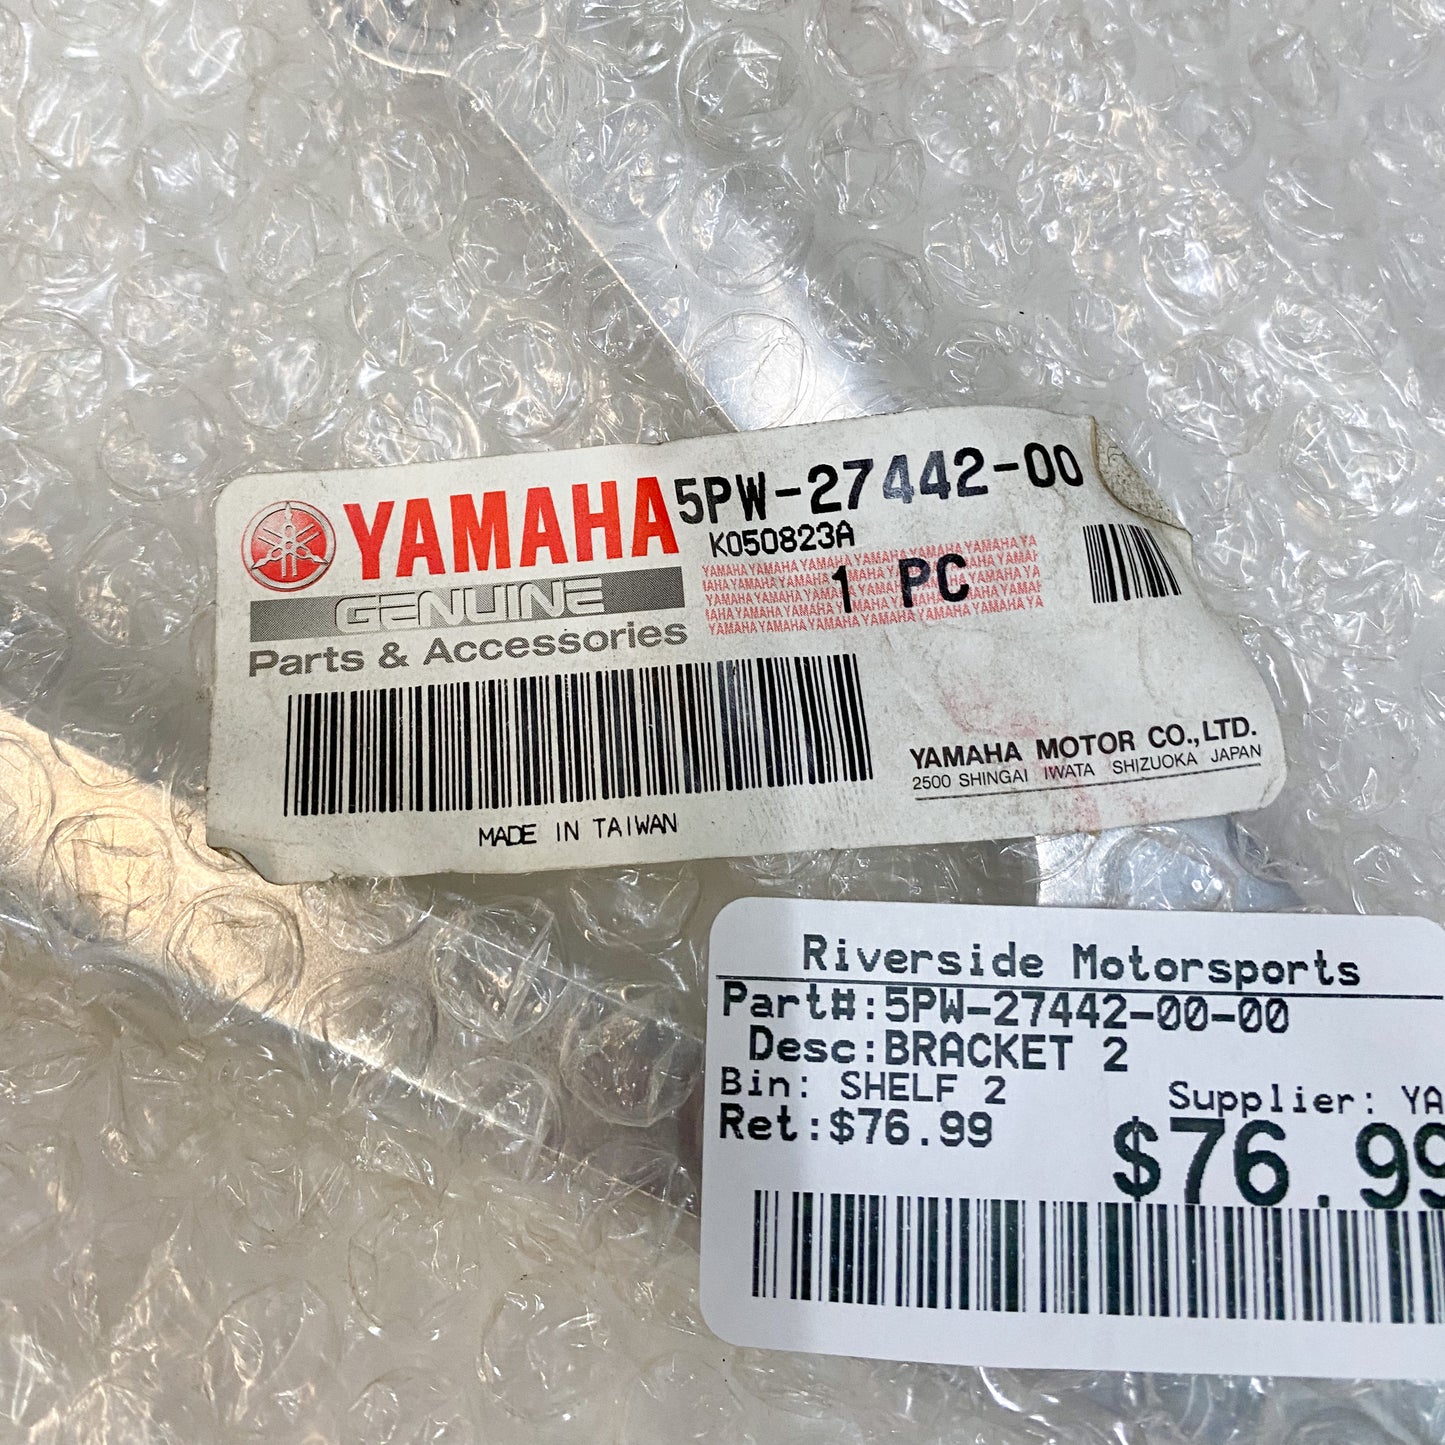 Yamaha Bracket 2 5PW-27442-00-00